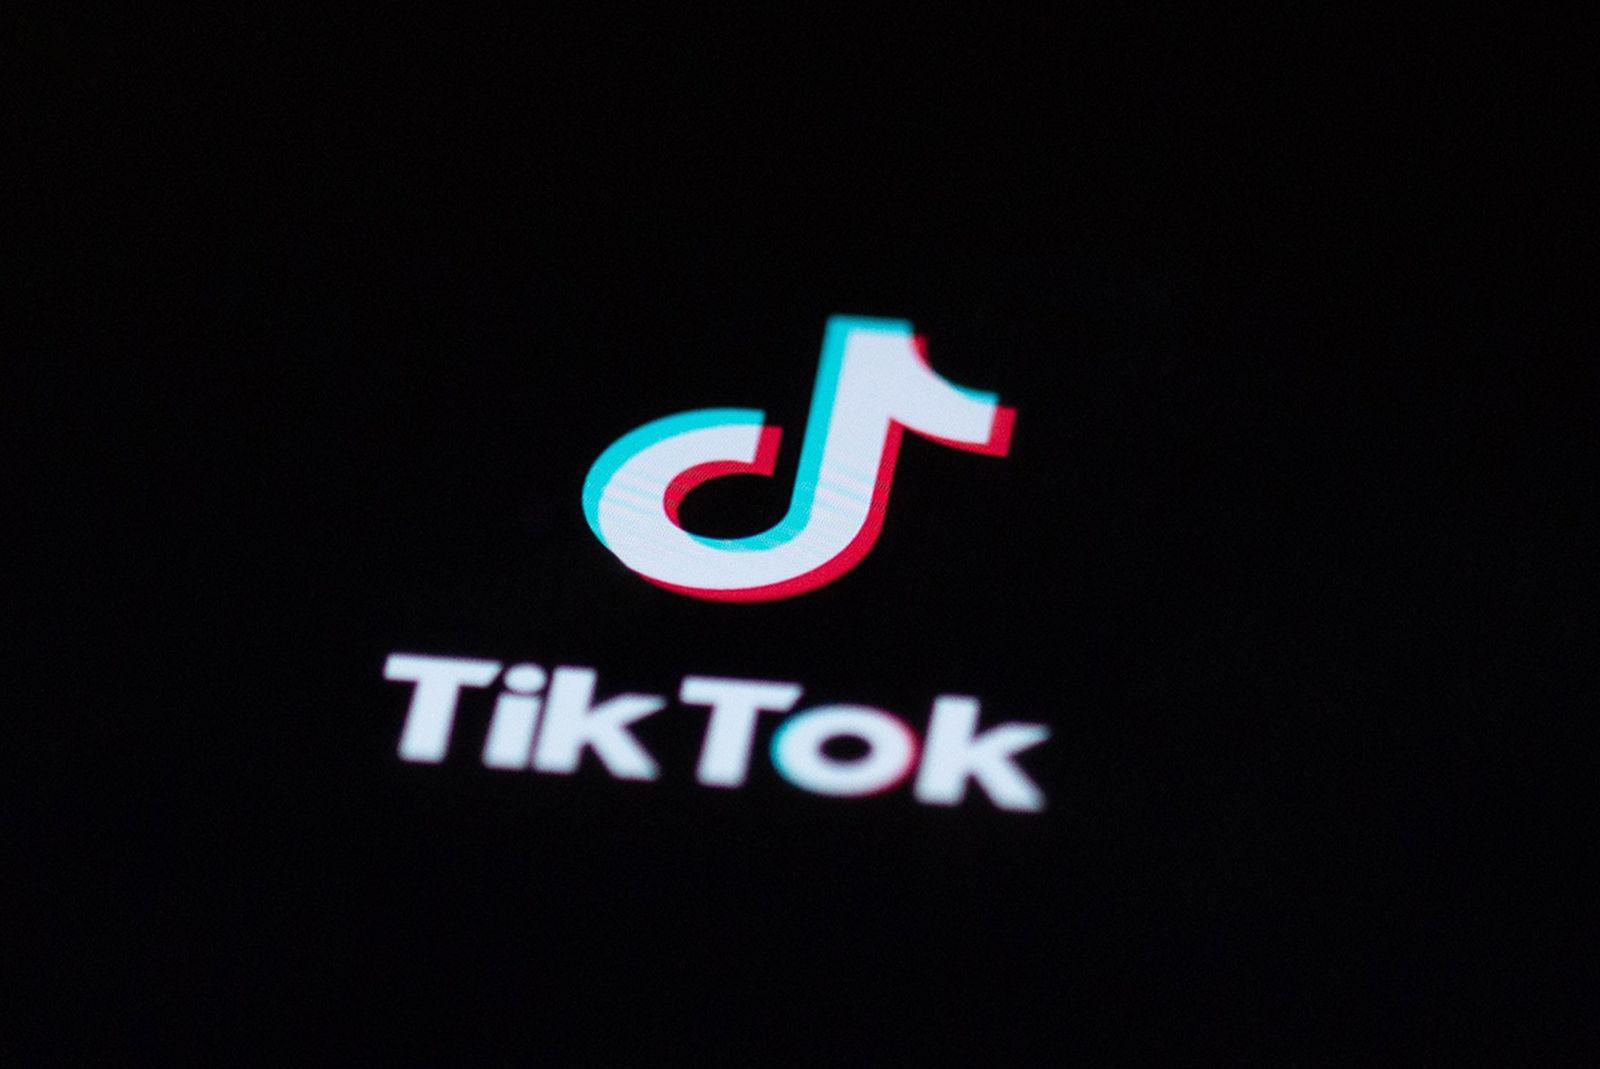 TikTok está testando jogos online e um novo streaming de música